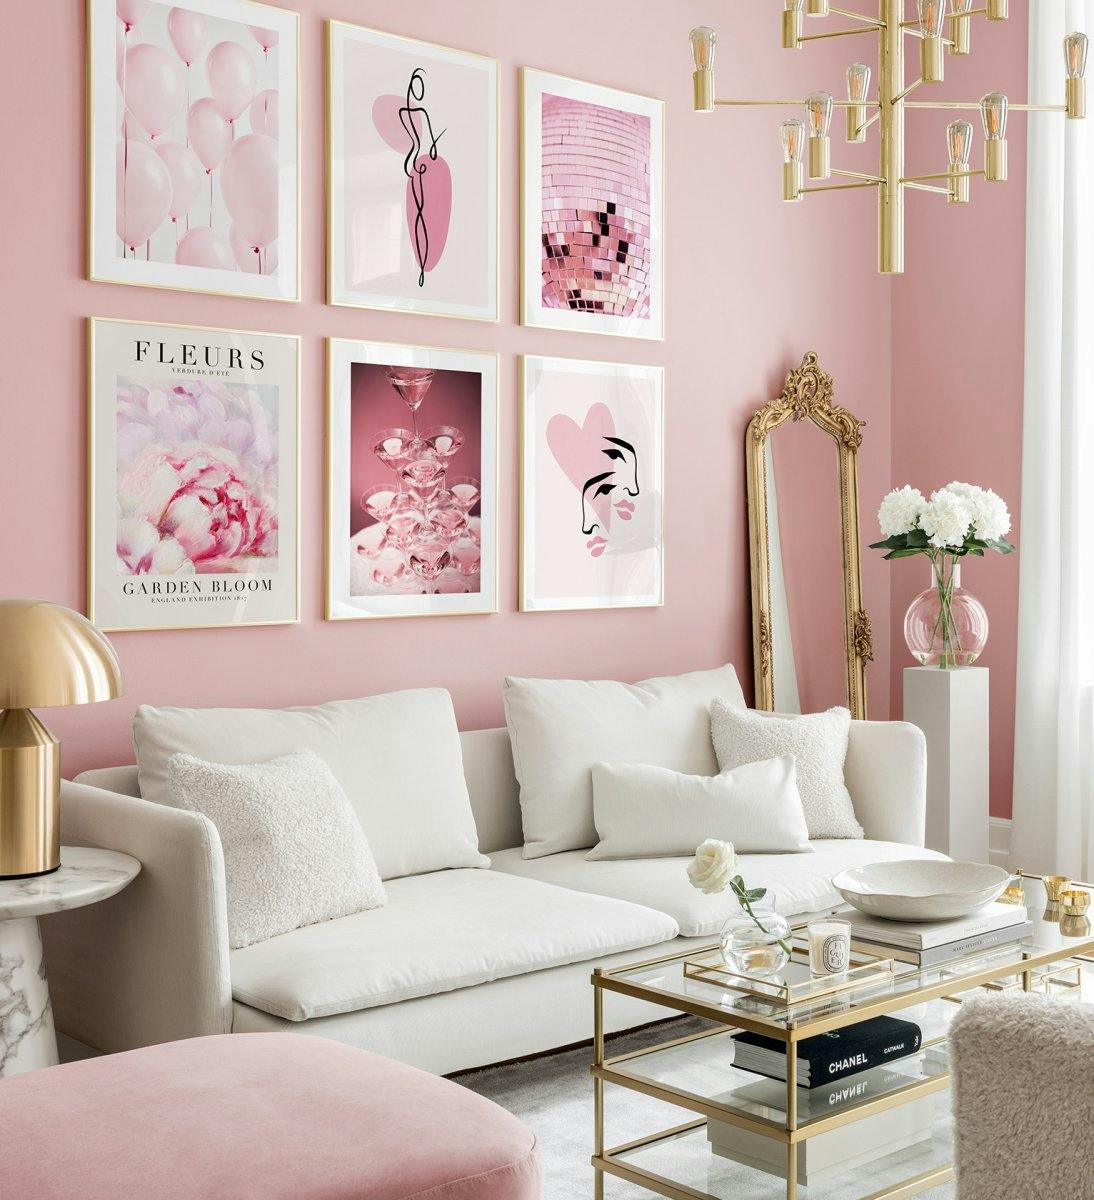 Galleria rosa e romantica a parete di illustrazioni e fotografie con cornici dorate per soggiorno